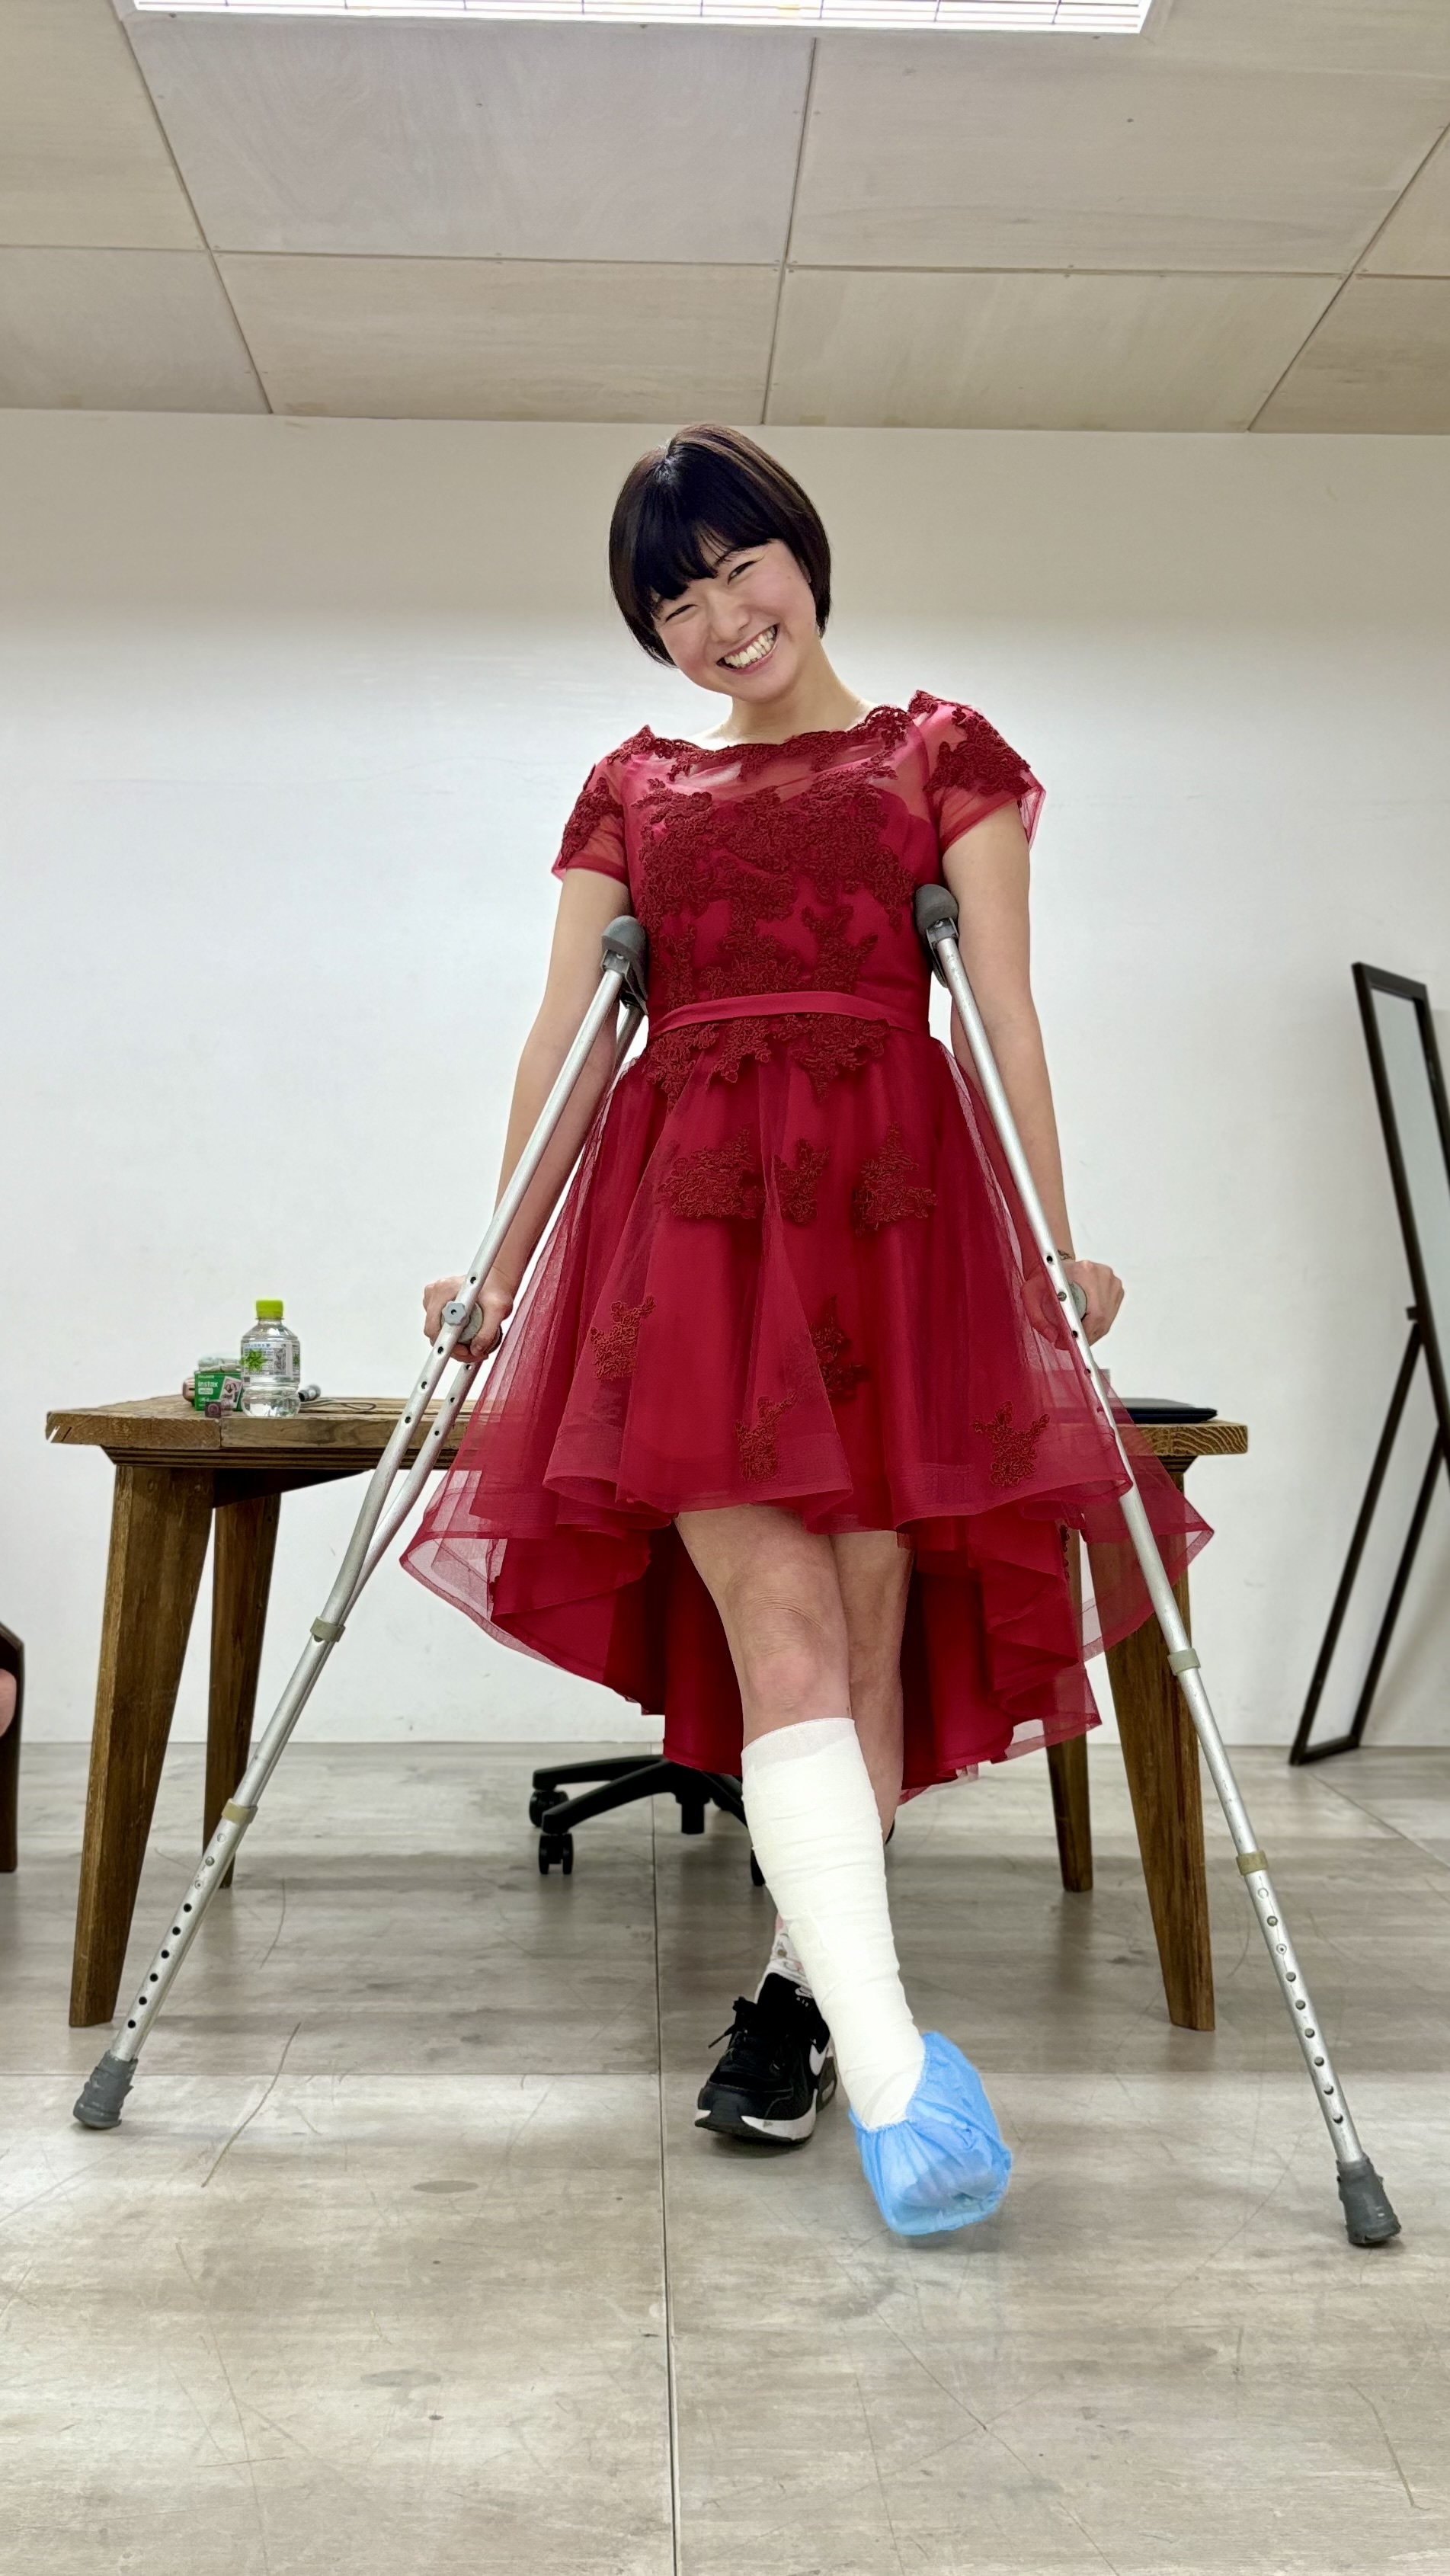 温泉モデルしずかちゃんが
「アキレス腱心配かけてごめんねチェキ&グッズ即売会」を
東京・池袋にて4月20日開催！